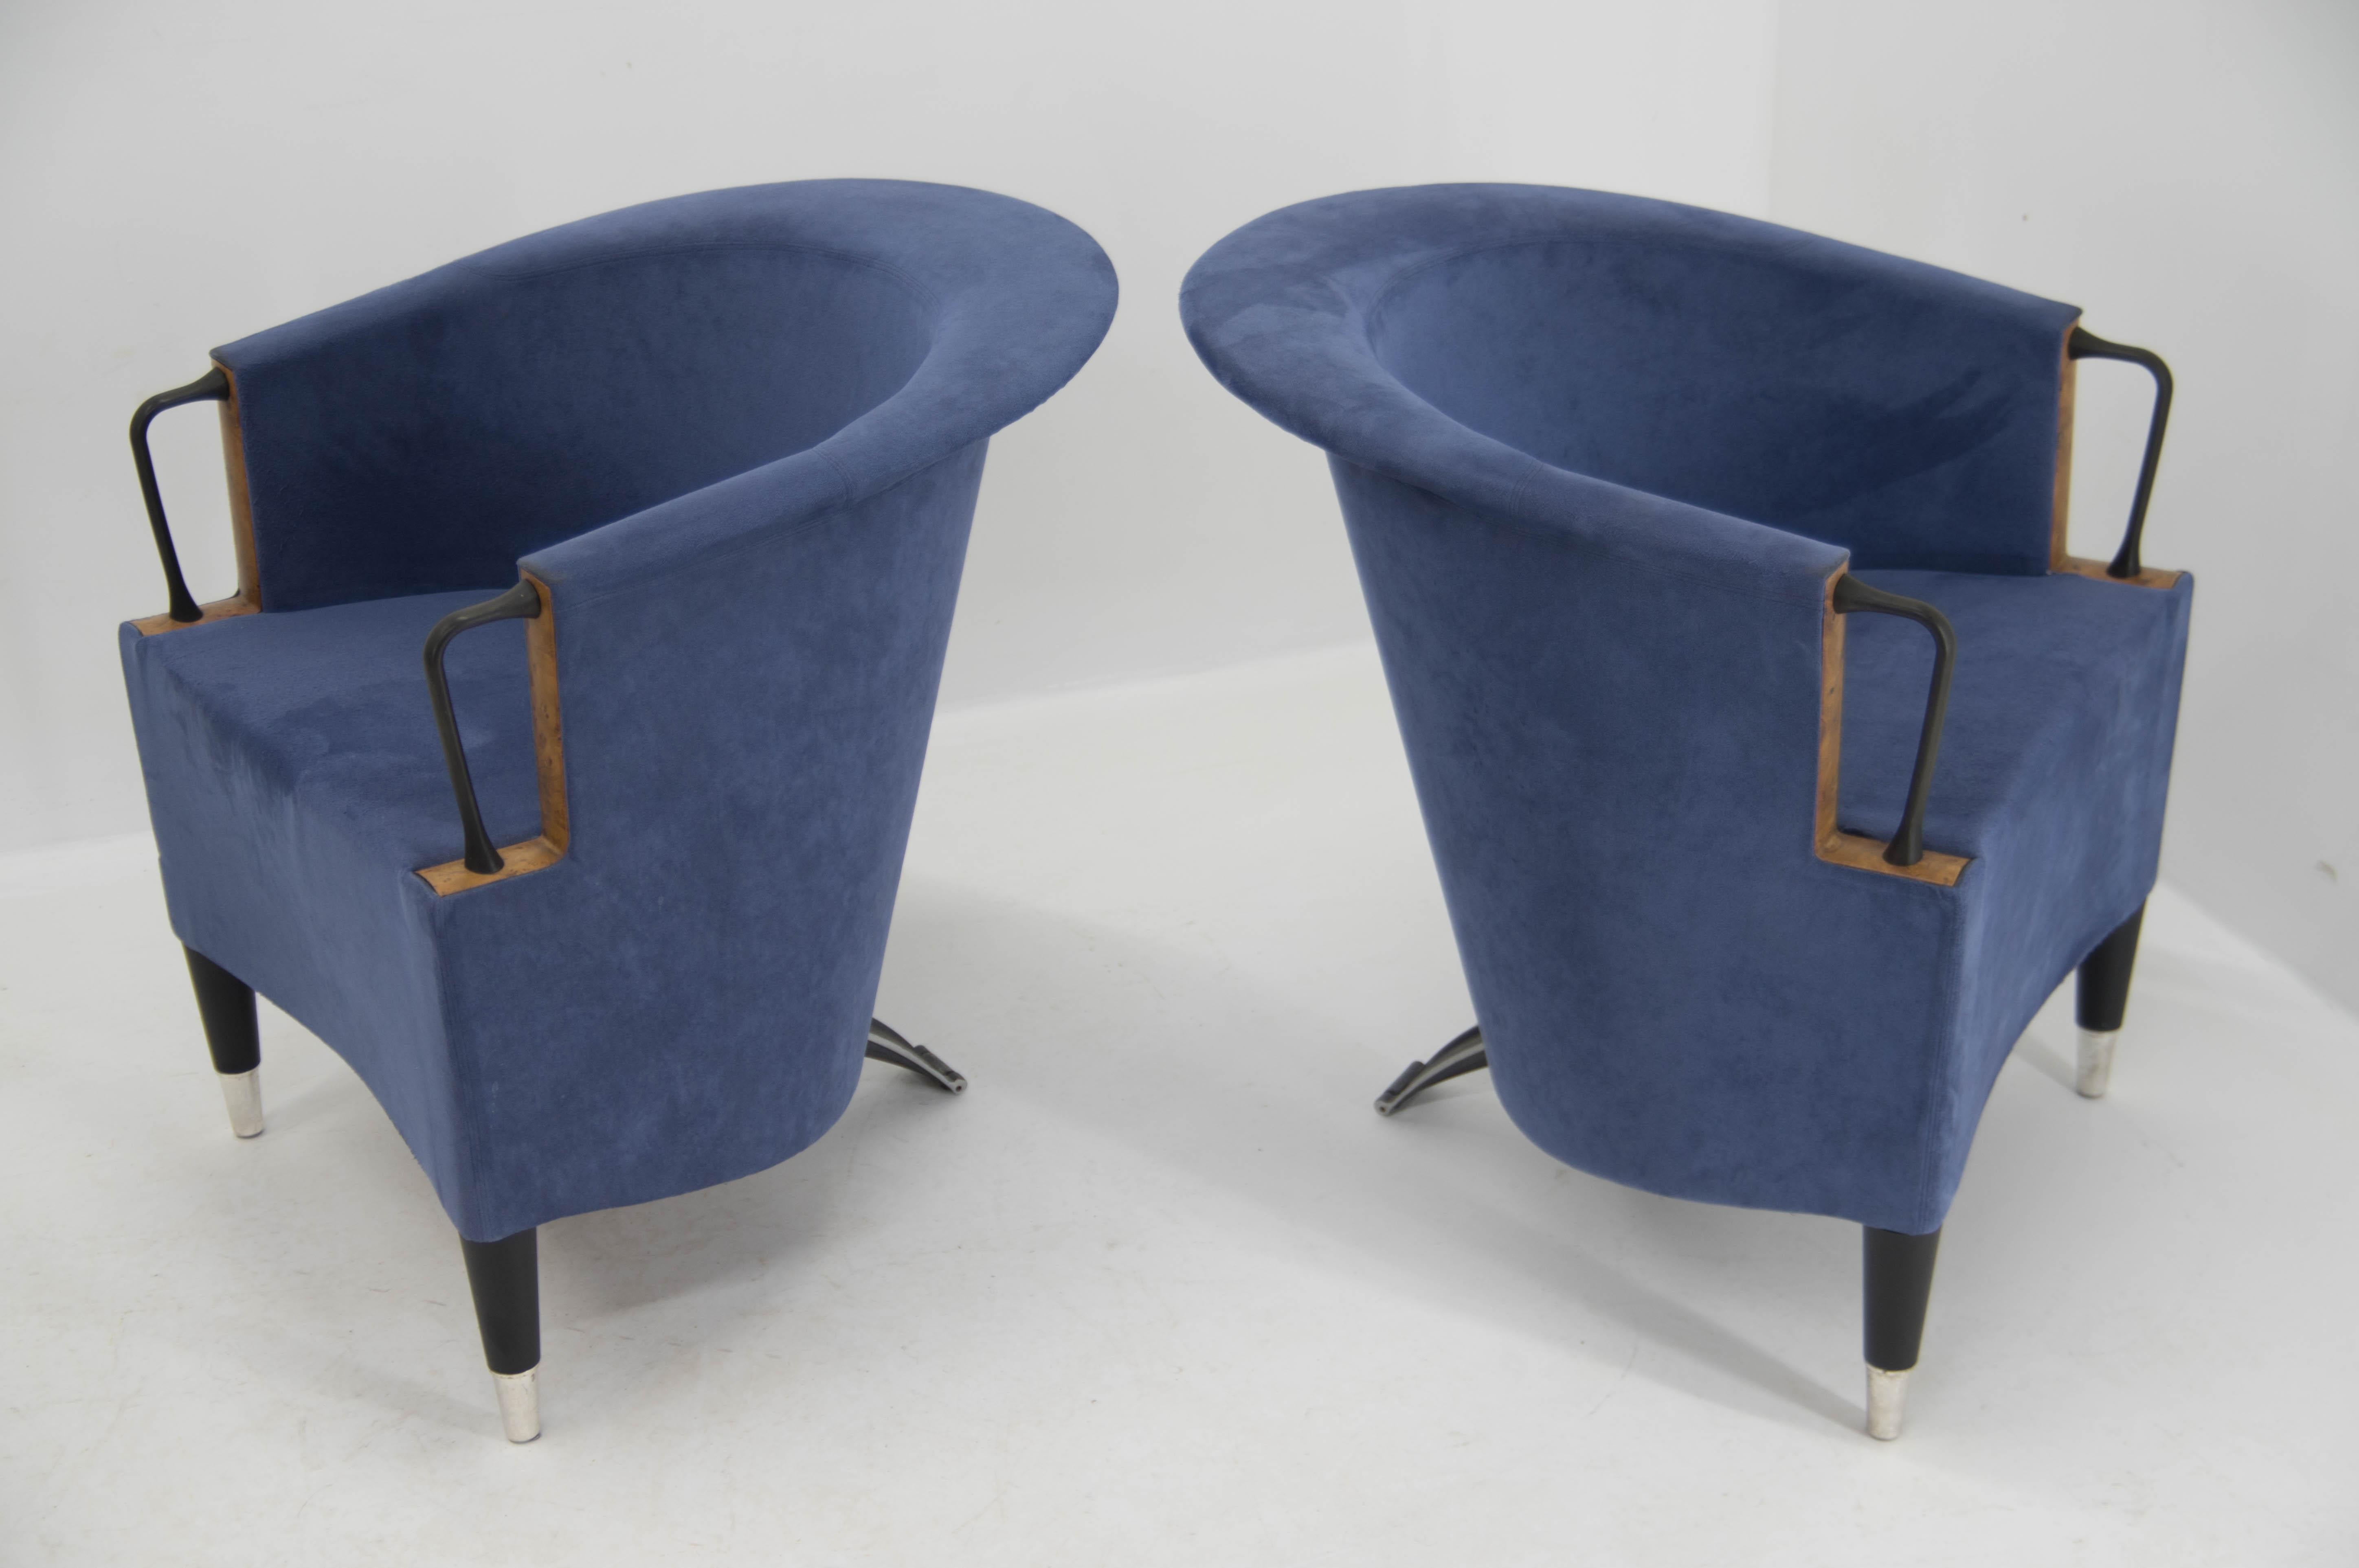 Design-Sessel, entworfen von Paolo Piva. Der Eisenmechanismus am hinteren Bein ermöglicht eine einfache Bewegung des Stuhls auf dem Boden. Sehr guter Originalzustand.